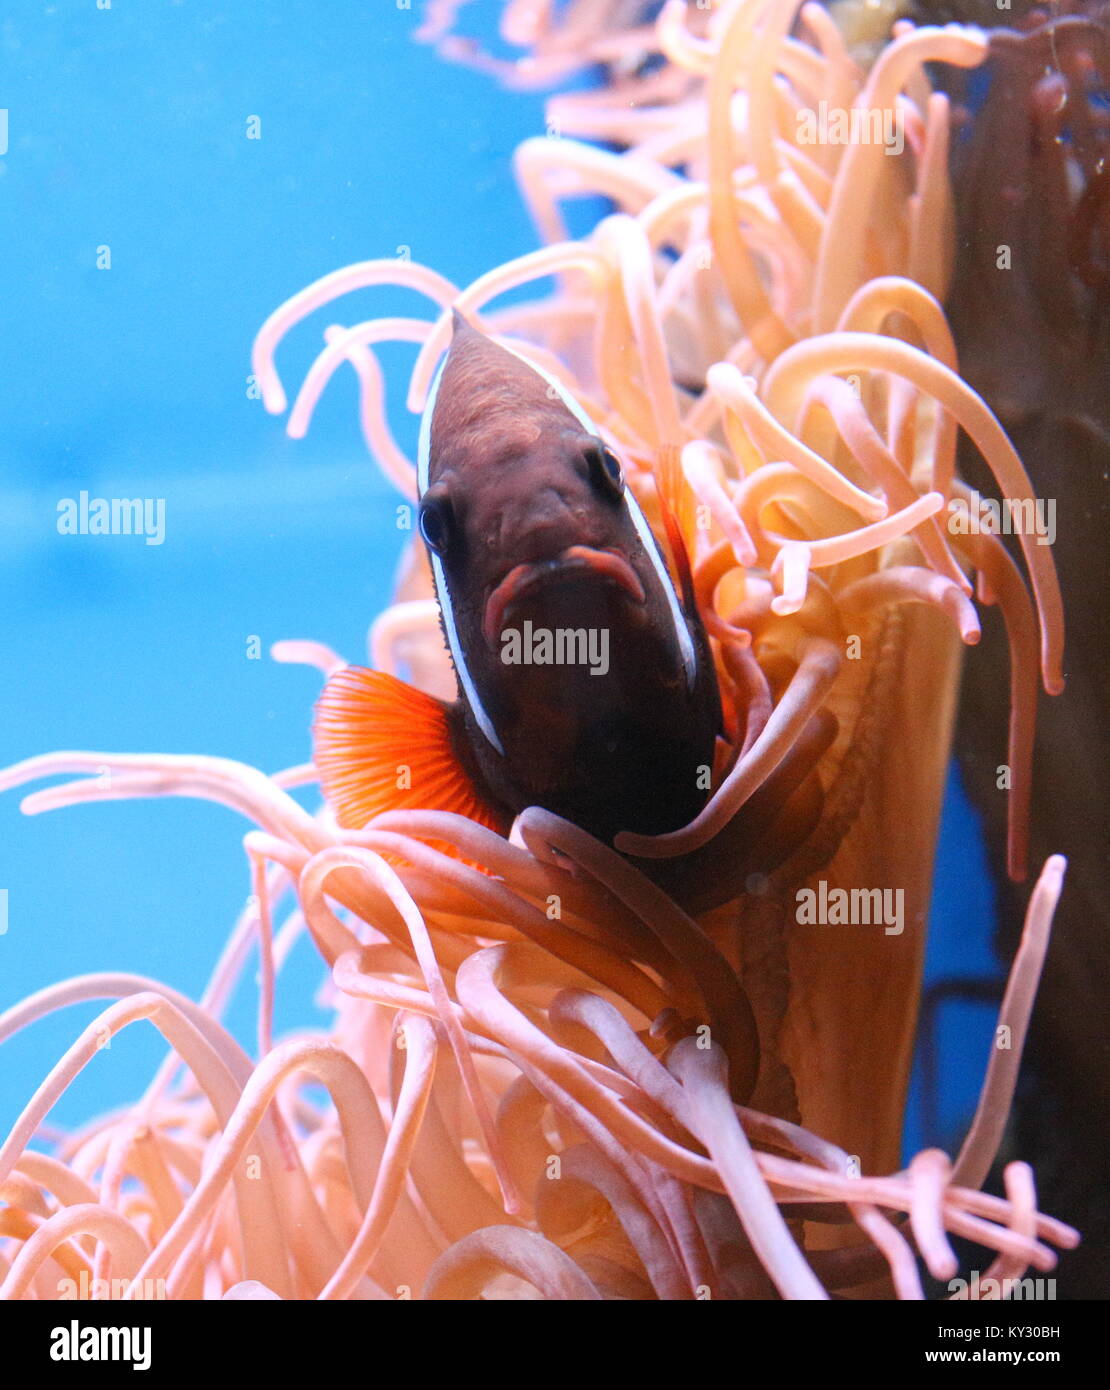 Pacific canela o fuego pez payaso (Amphiprion melanopus), también conocido como el rojo y el negro anemonefish. Foto de stock